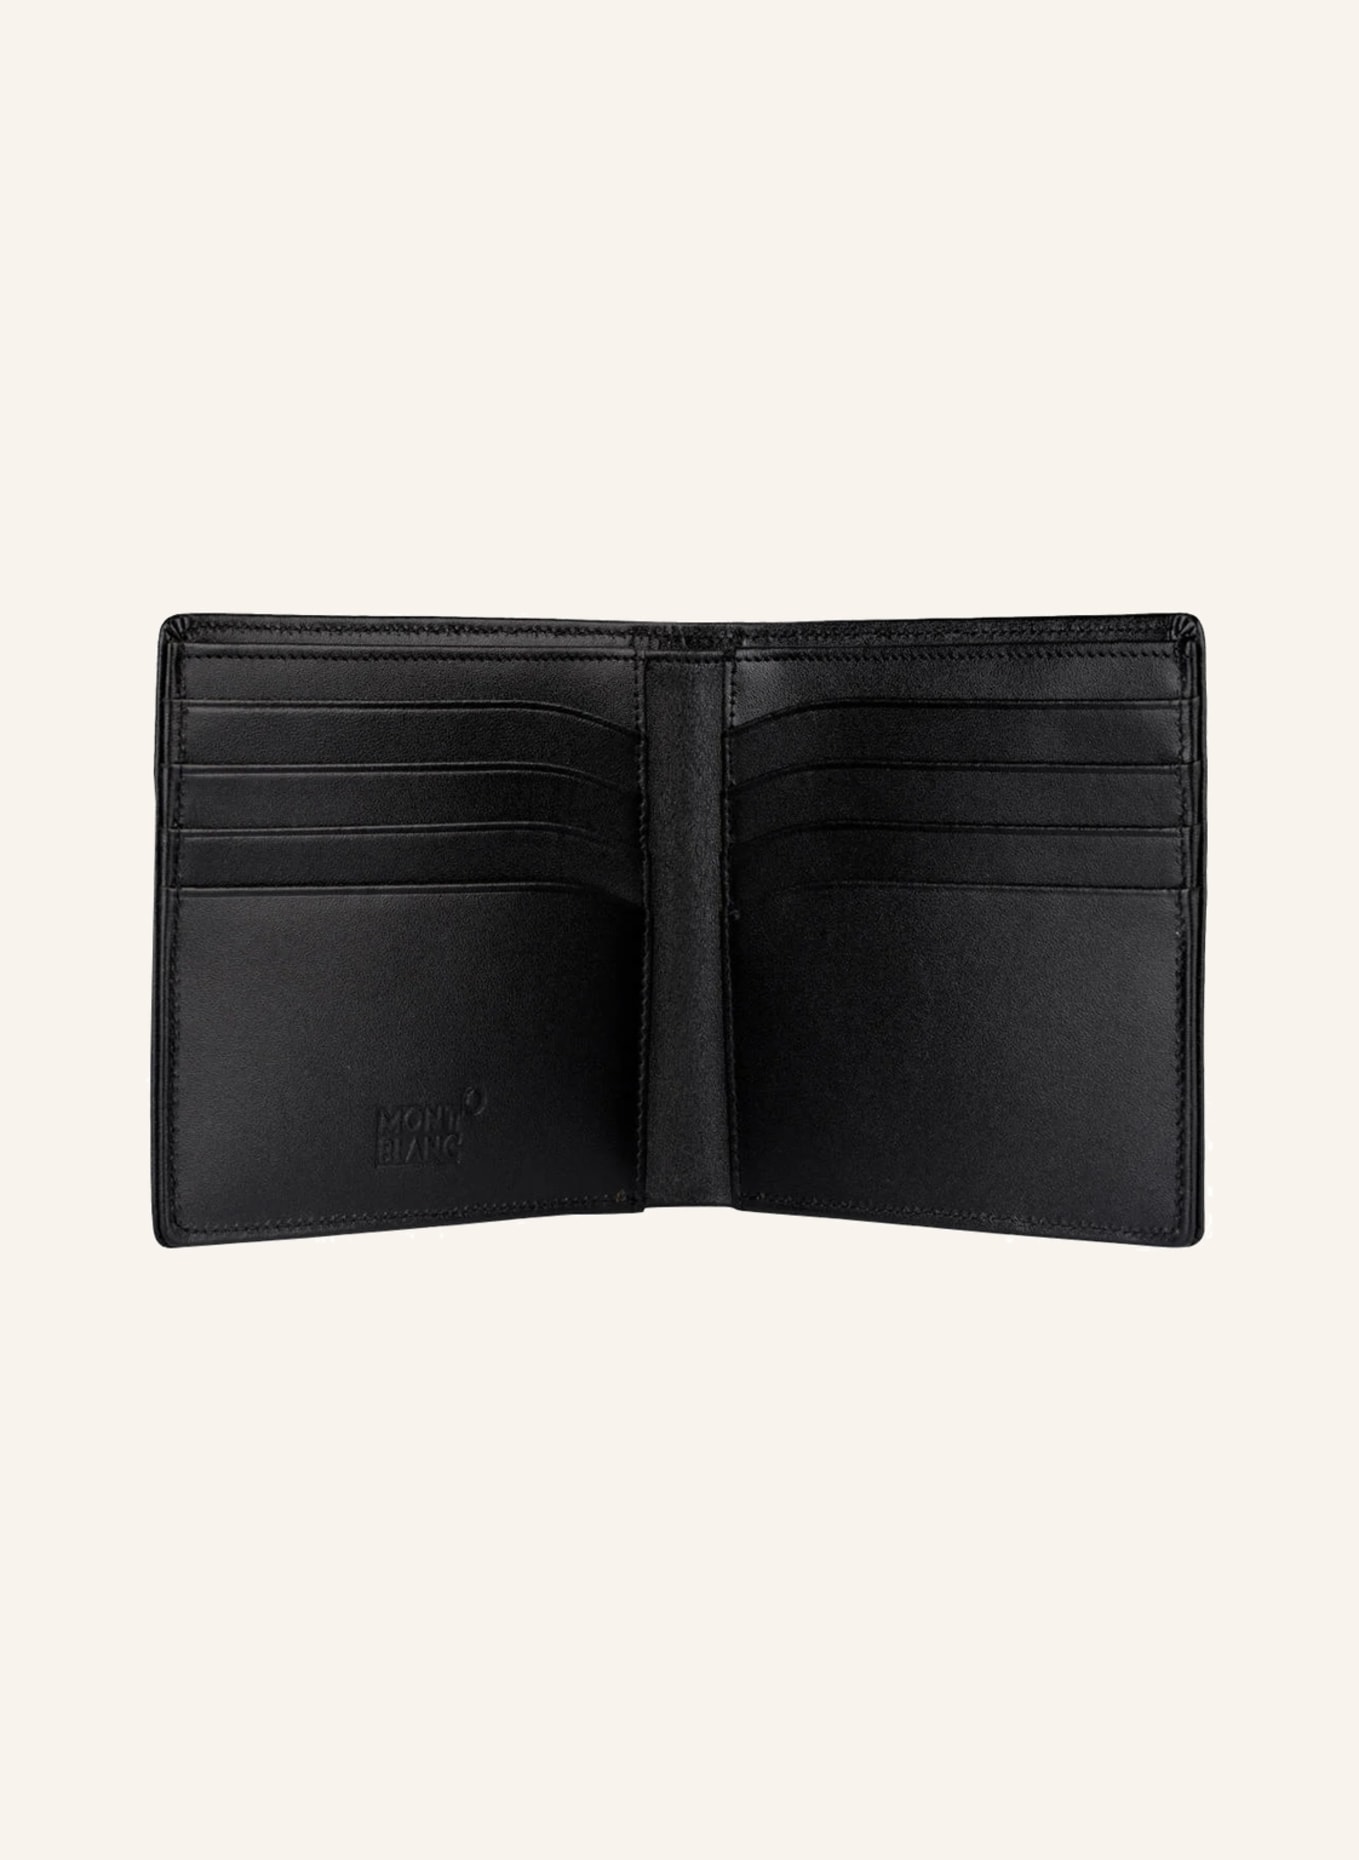 MONTBLANC Wallet MEISTERSTÜCK 8CC, Color: BLACK (Image 2)